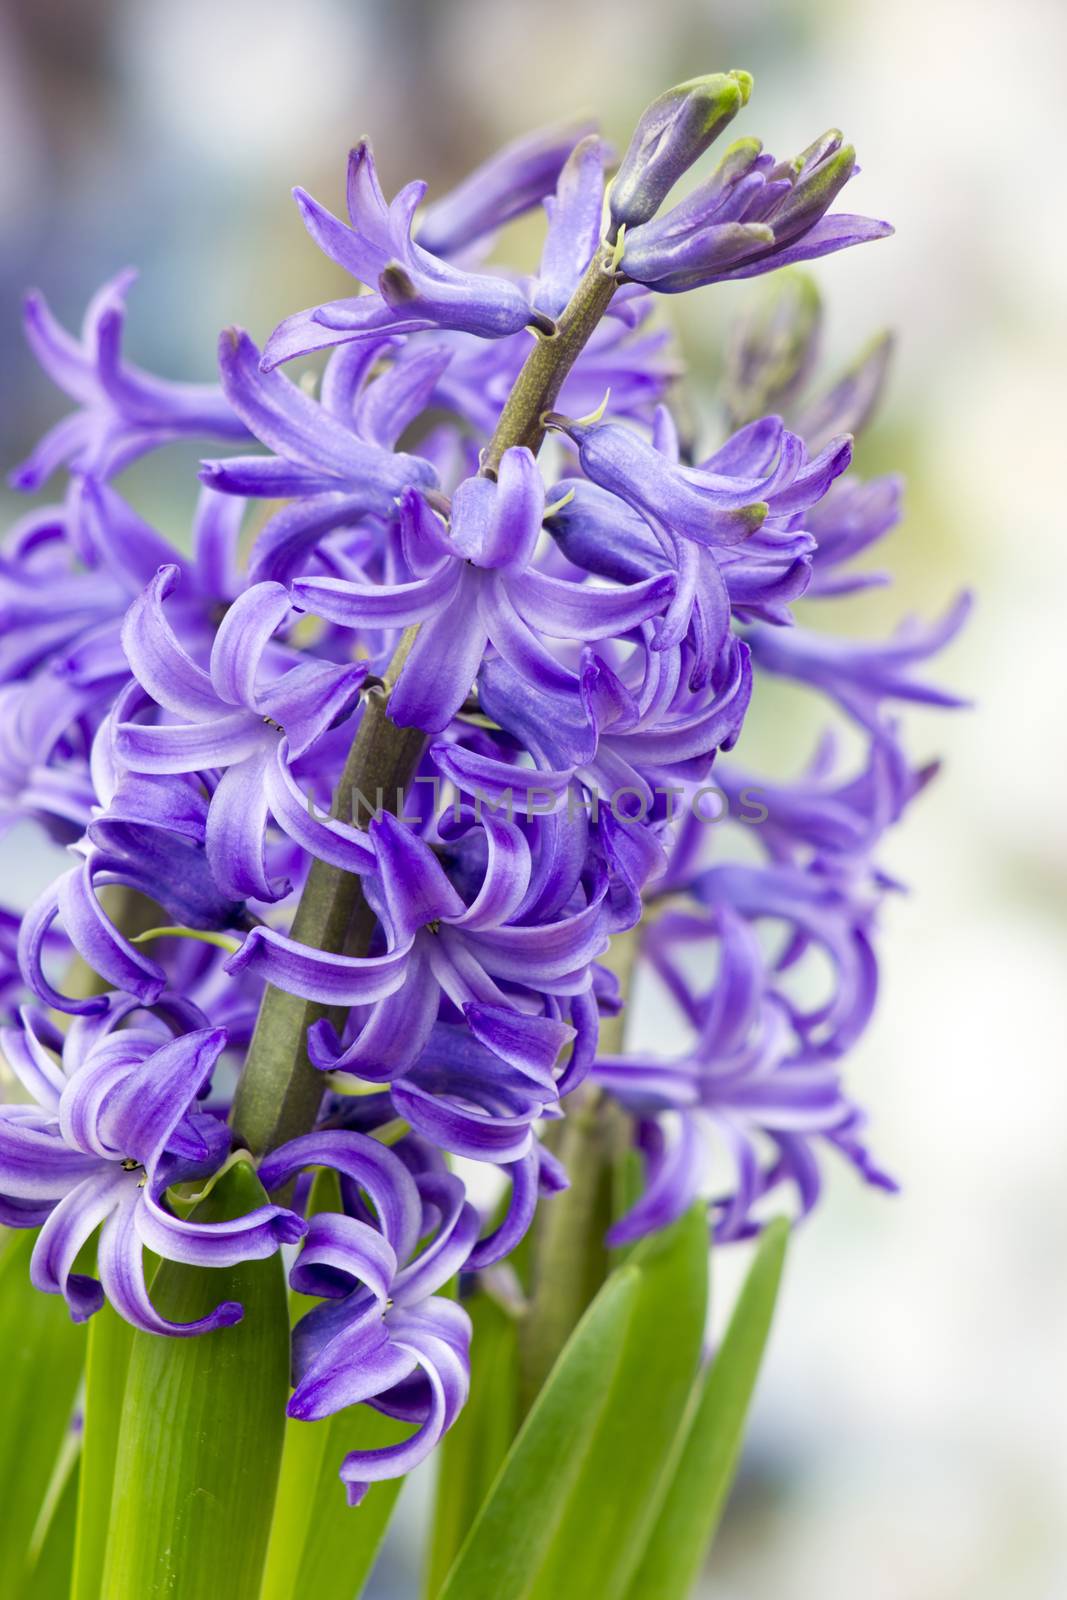 blooming hyacinth flowers (hyacinthus)